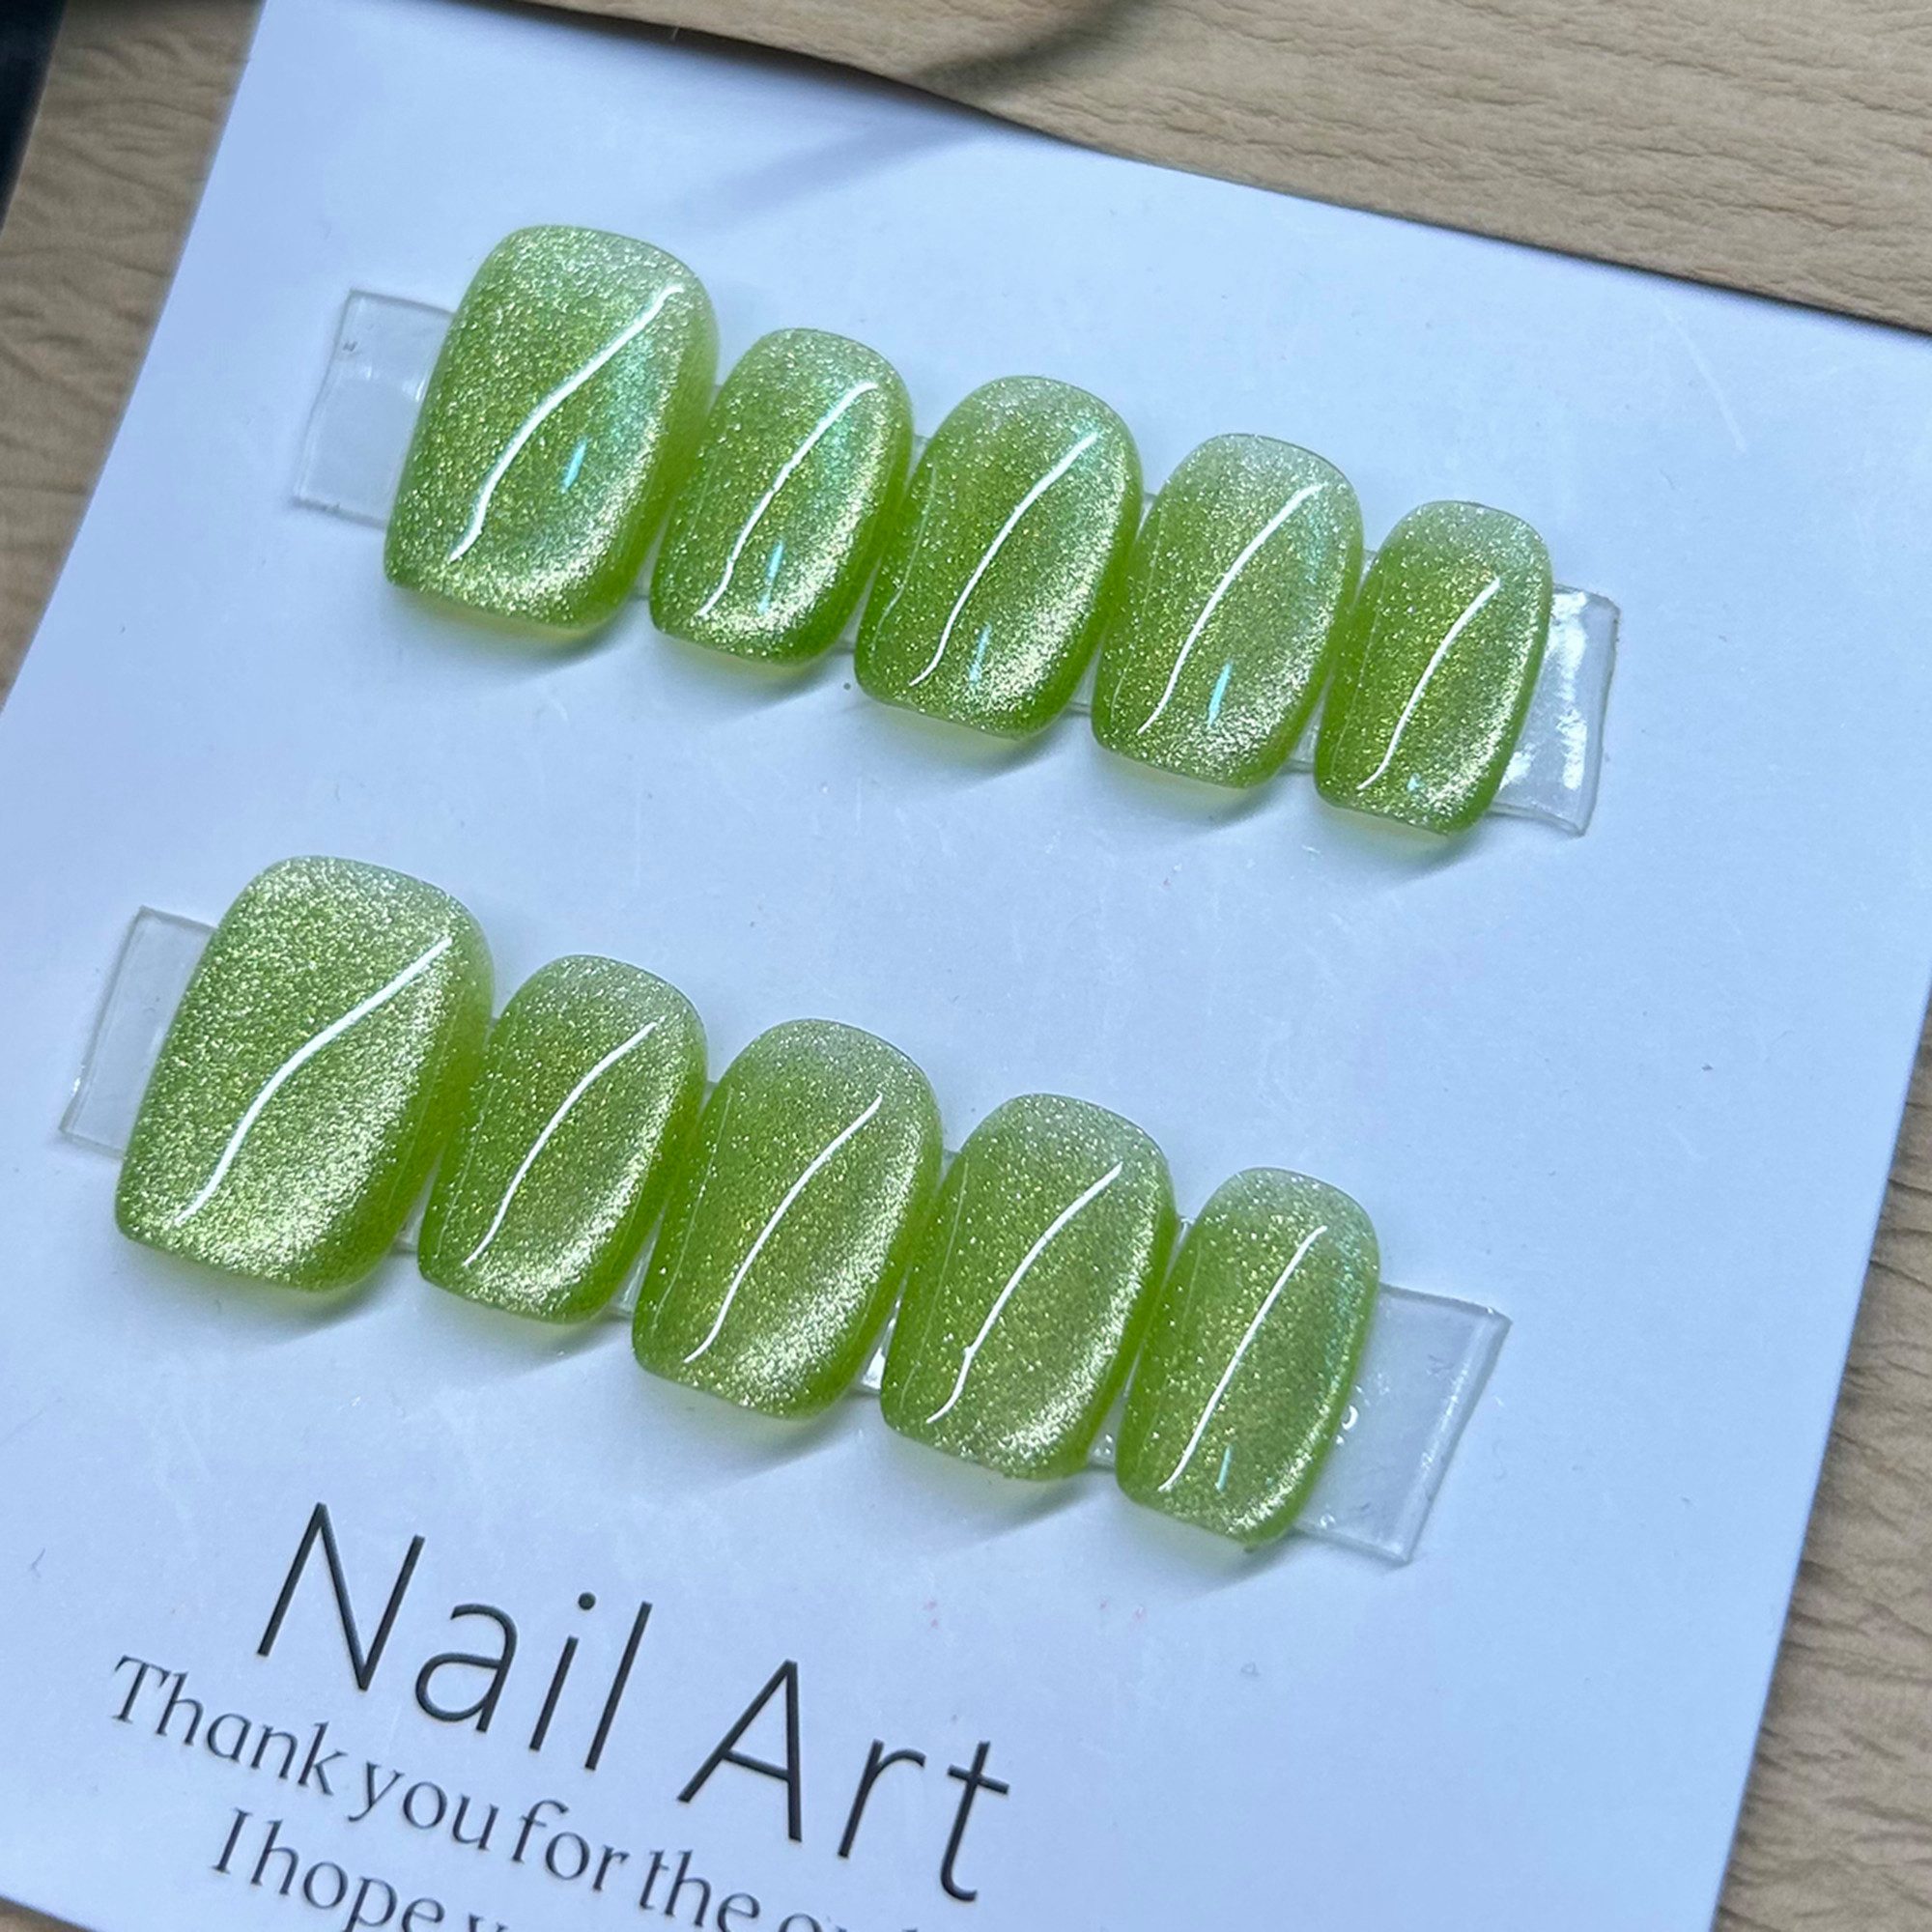 JOHNRAMBO Kunstfingernägel Glänzendes Smaragdgrün Handgefertigte Nägel Nageldesign-Sets